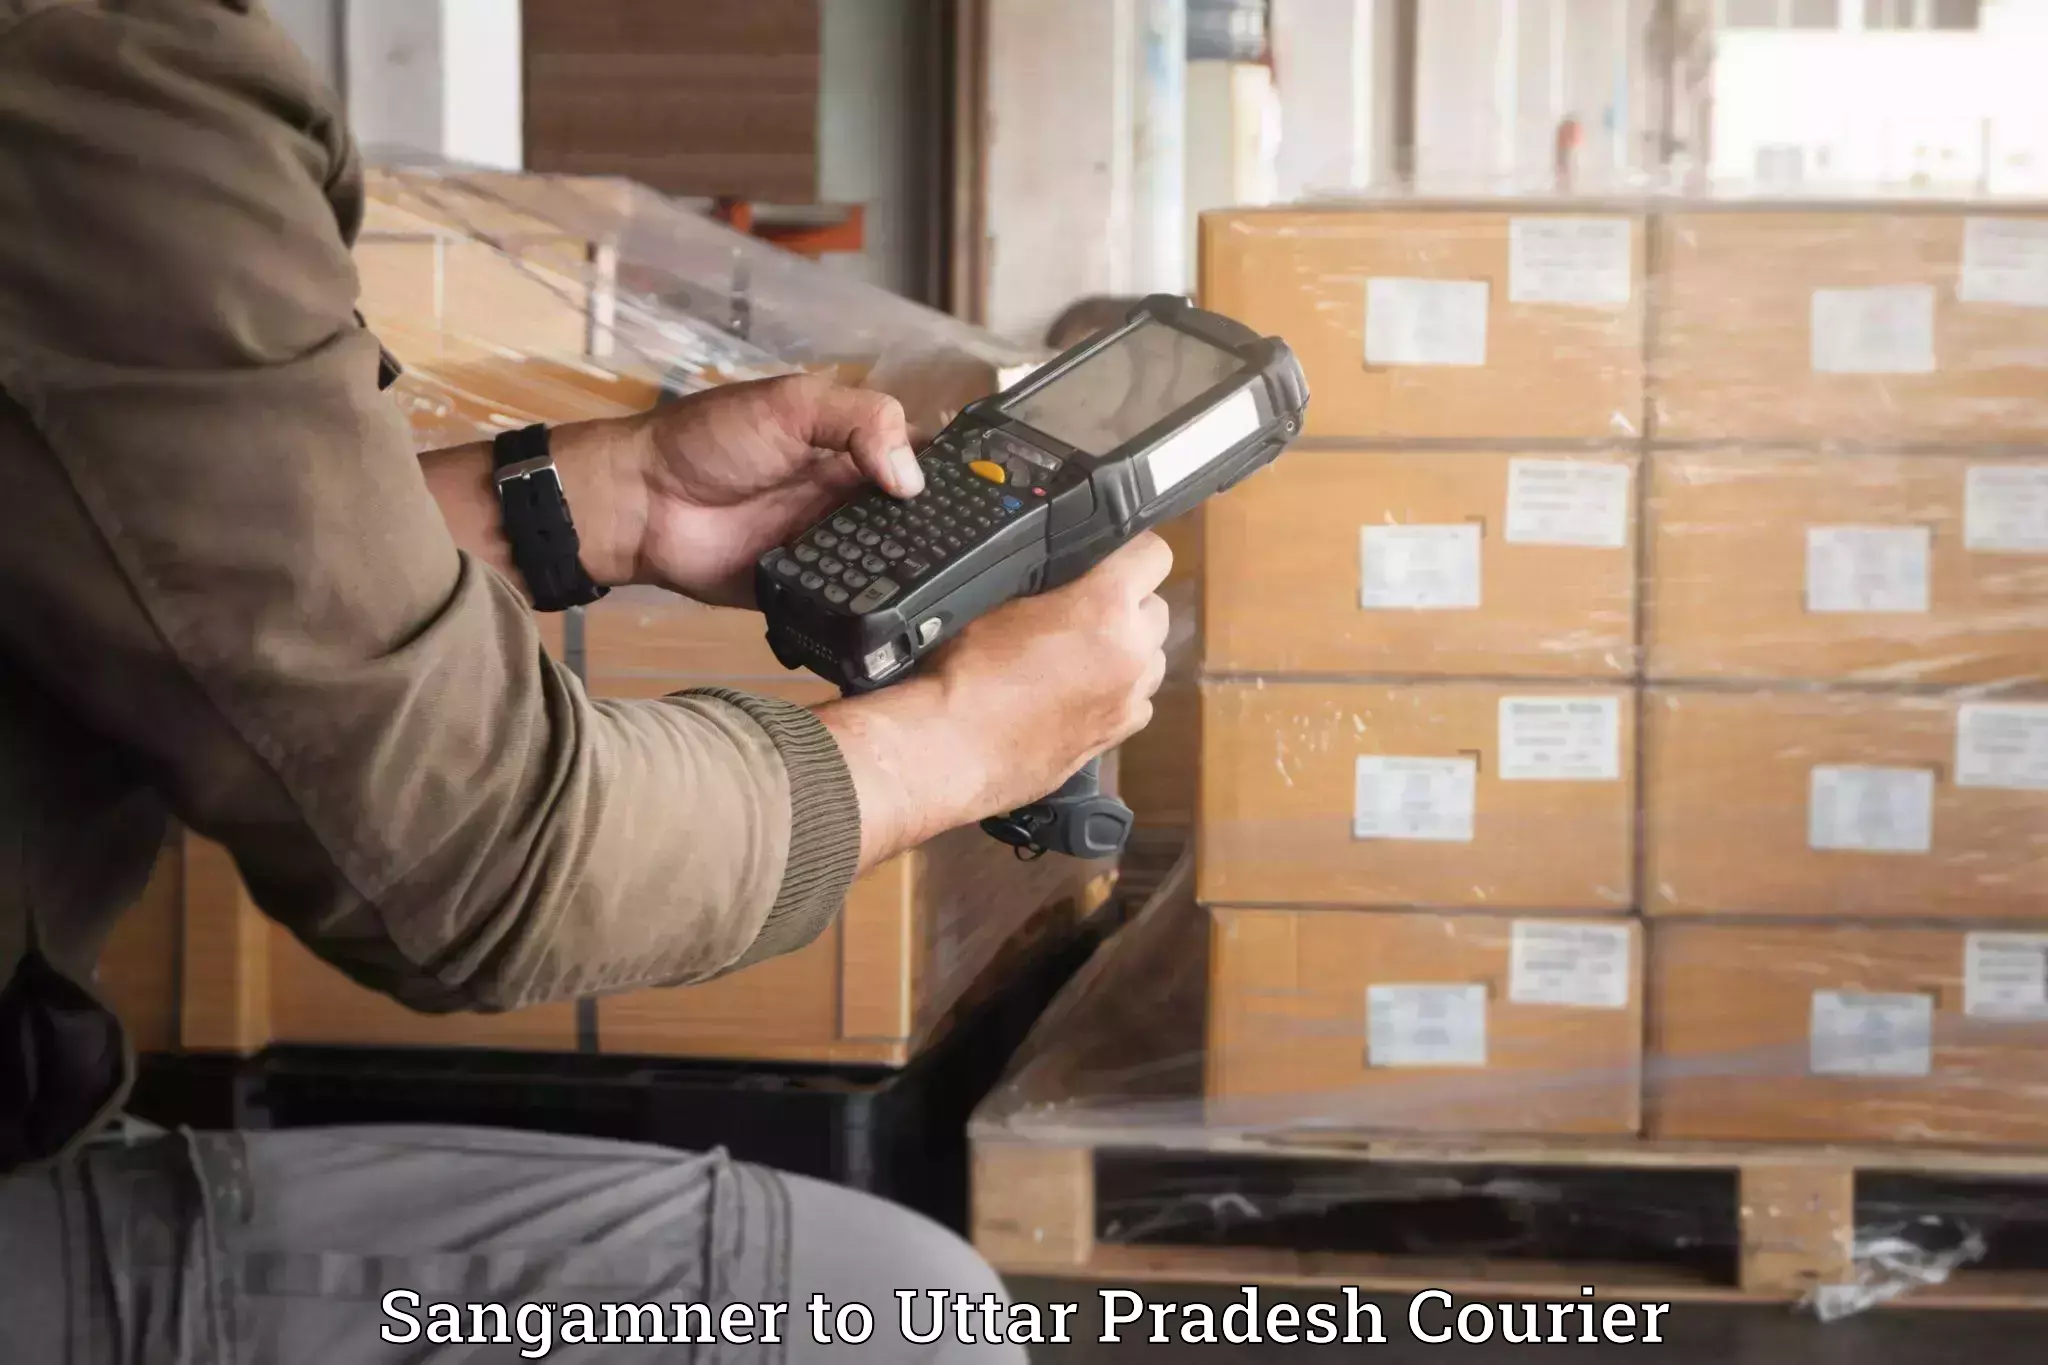 Luggage transport consulting Sangamner to Sahaswan